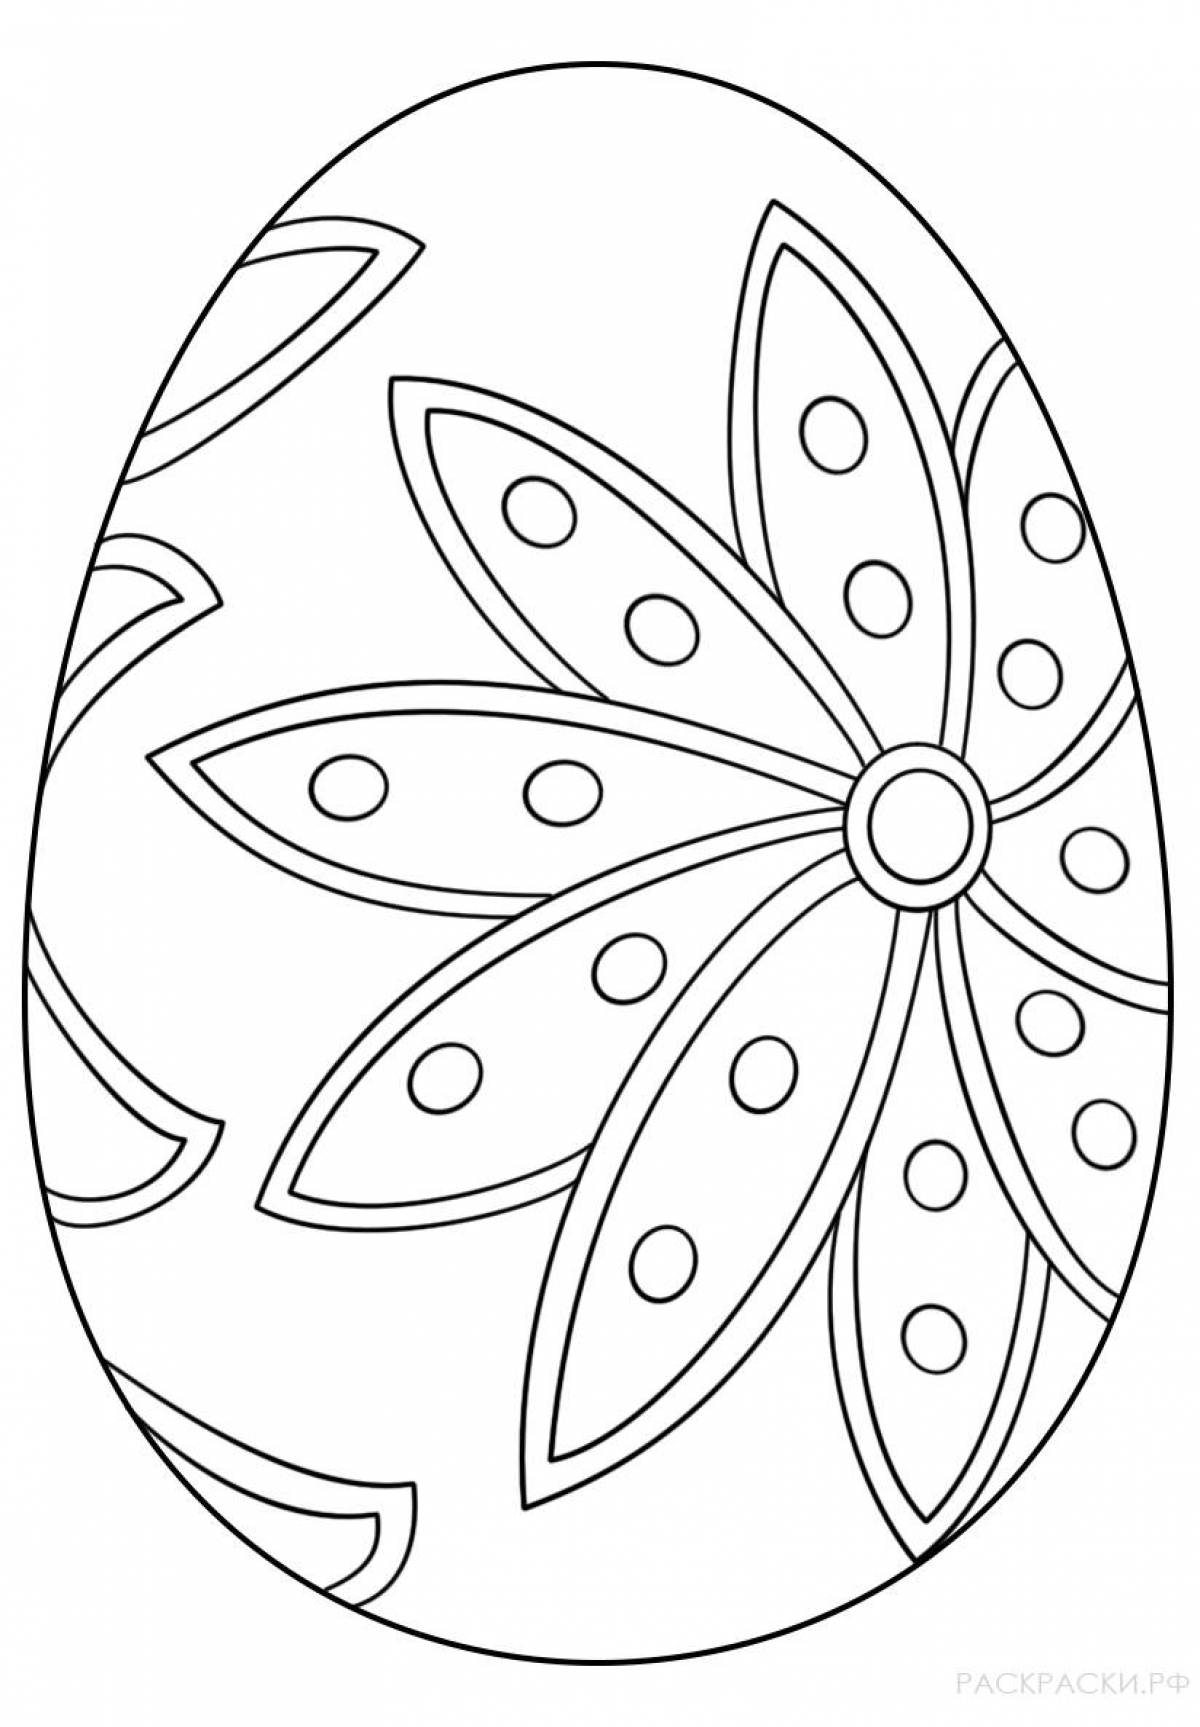 Увлекательная раскраска яйца